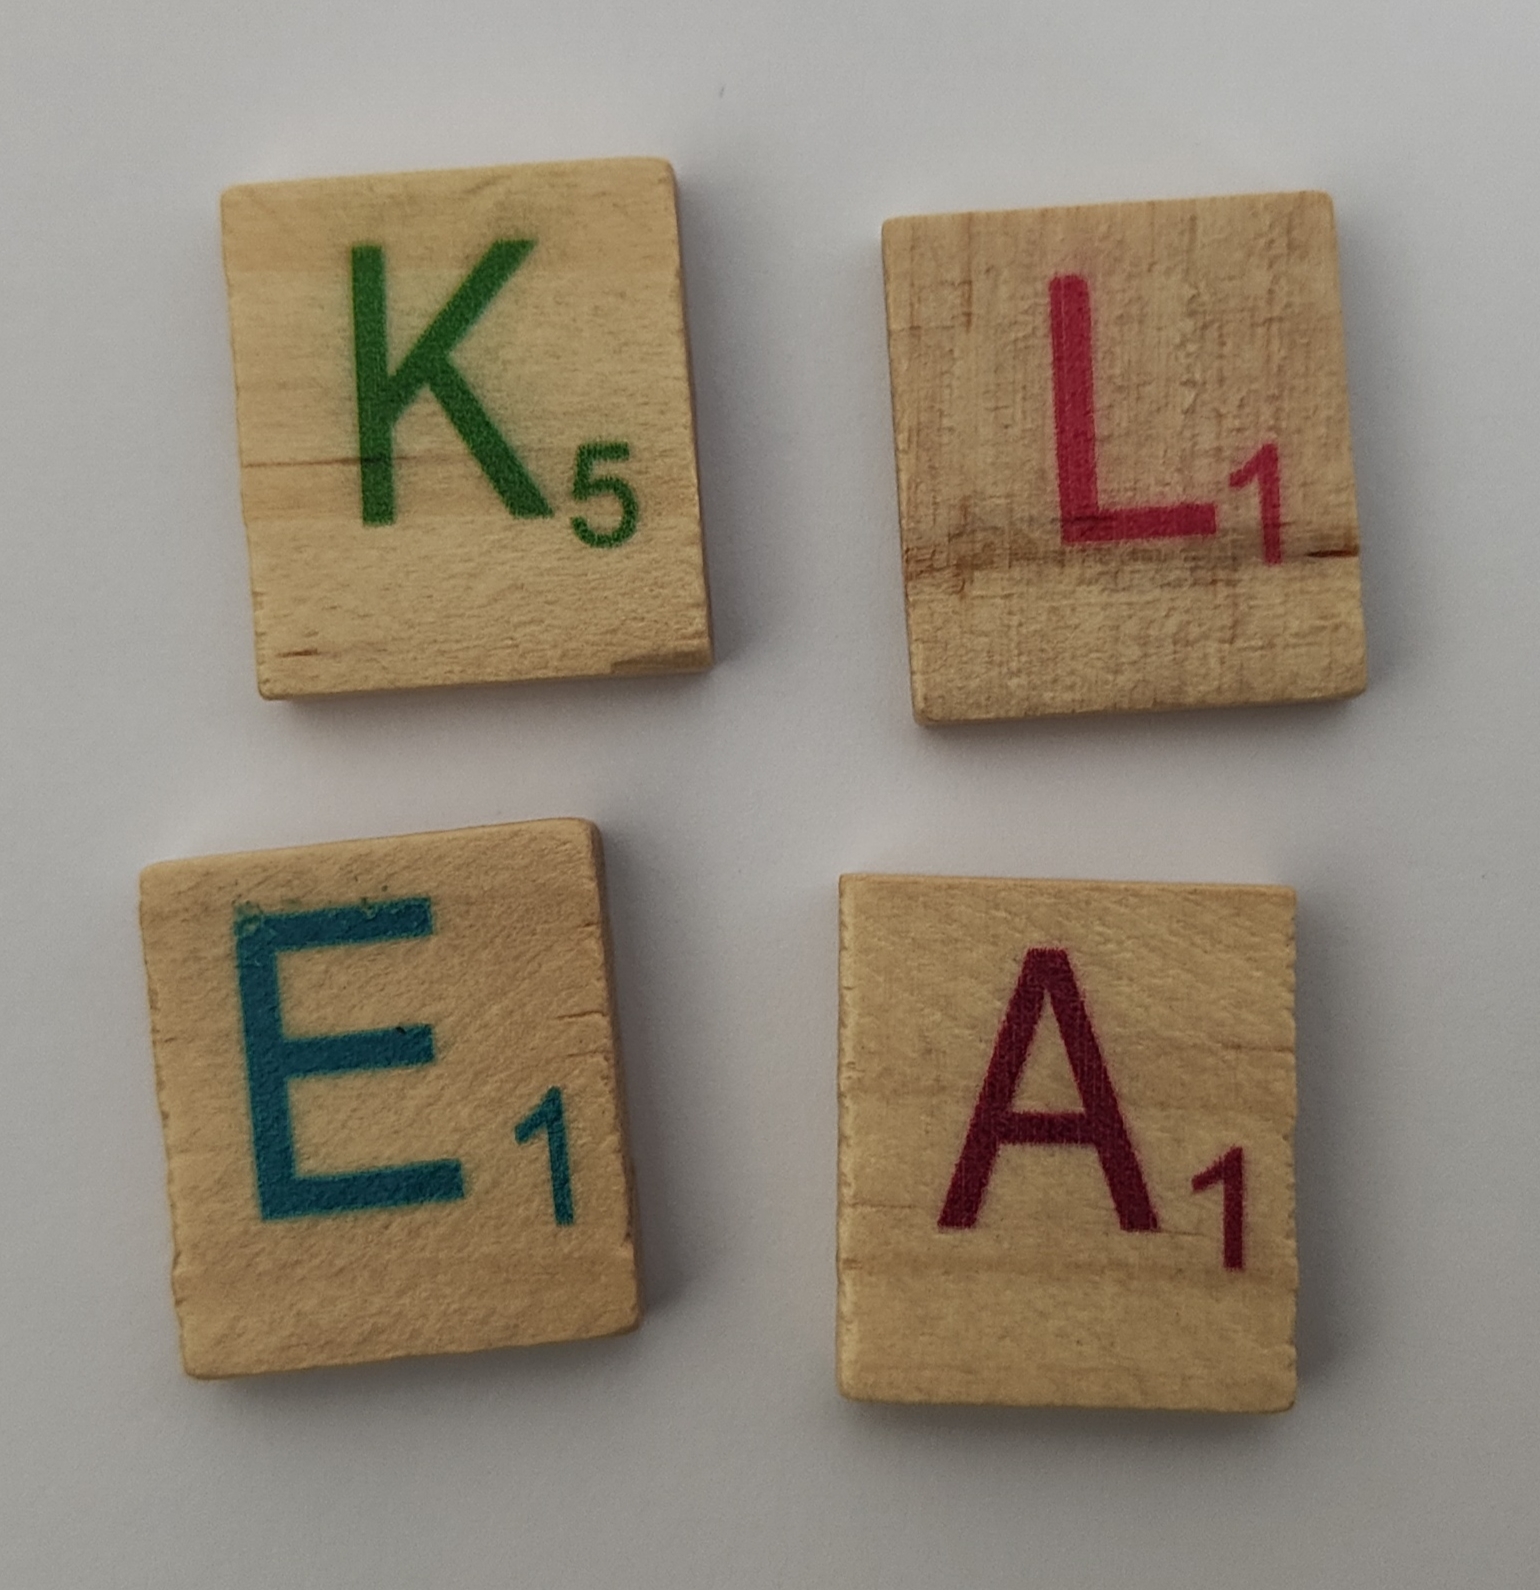 La imagen muestra las letras k l e a